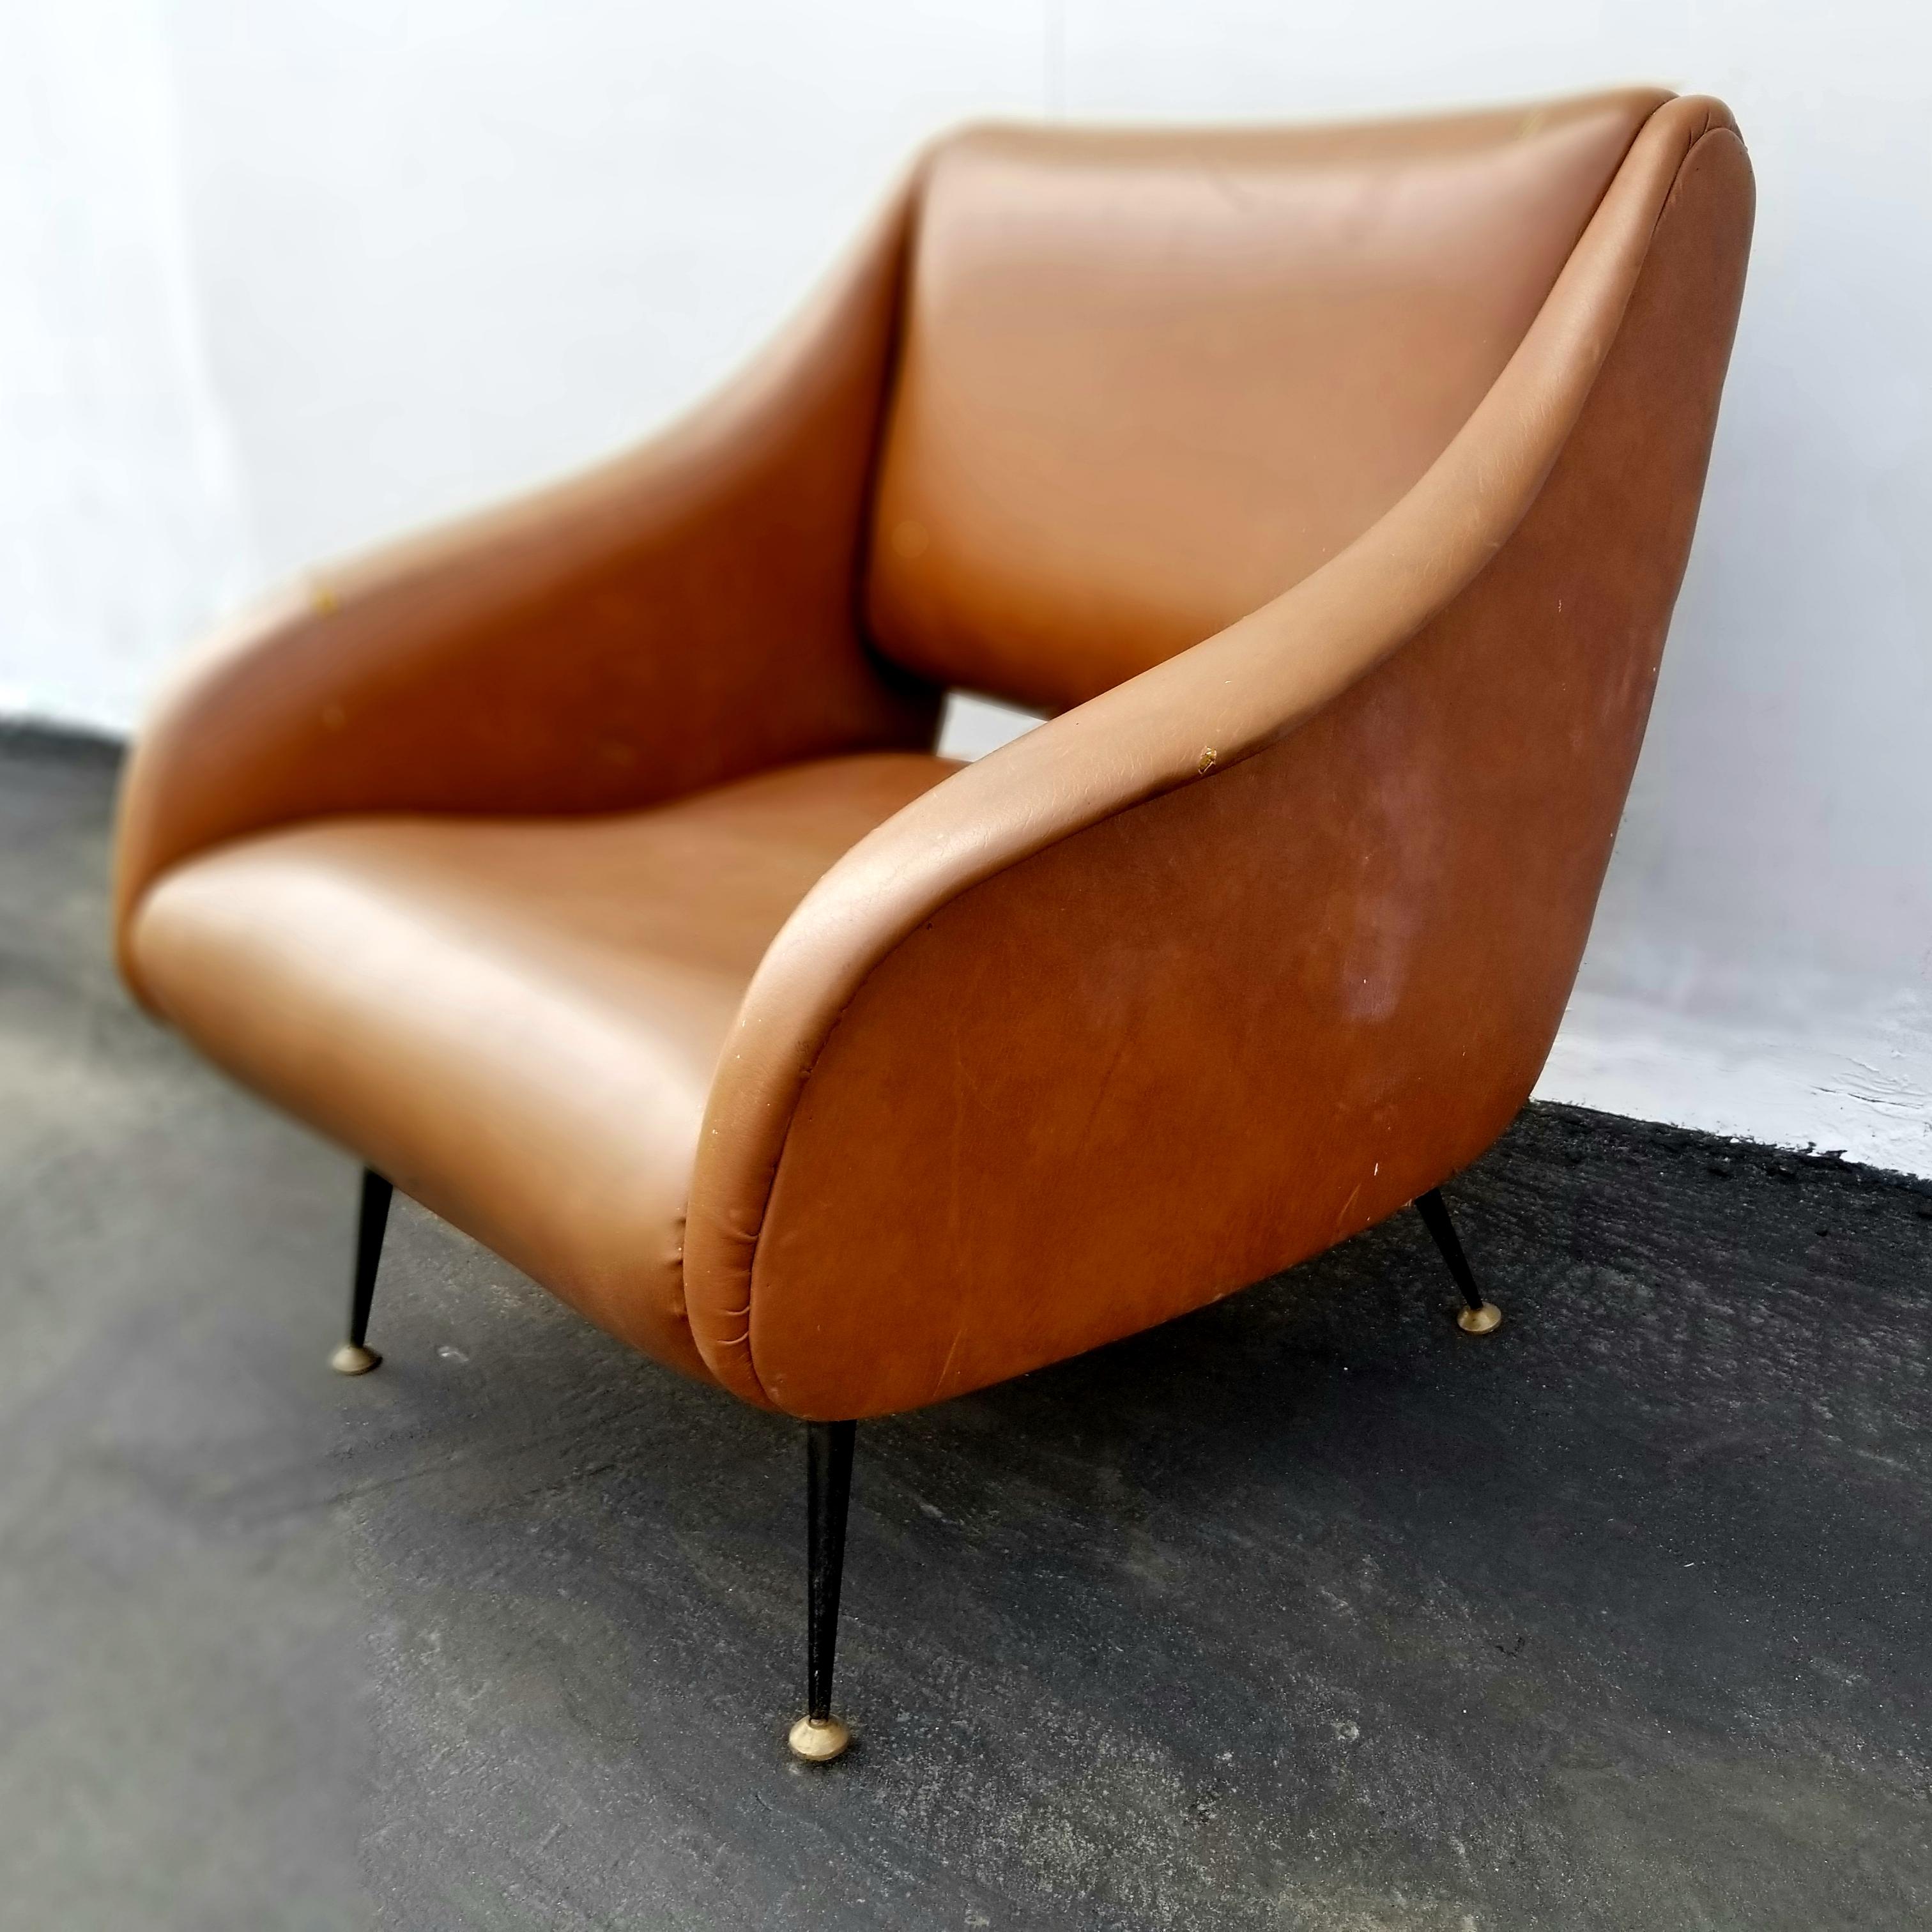 La chaise italienne Gigi Radice est recouverte de cuir et de bouclette.  La photo originale montre l'aspect de la chaise avant le rembourrage.
 